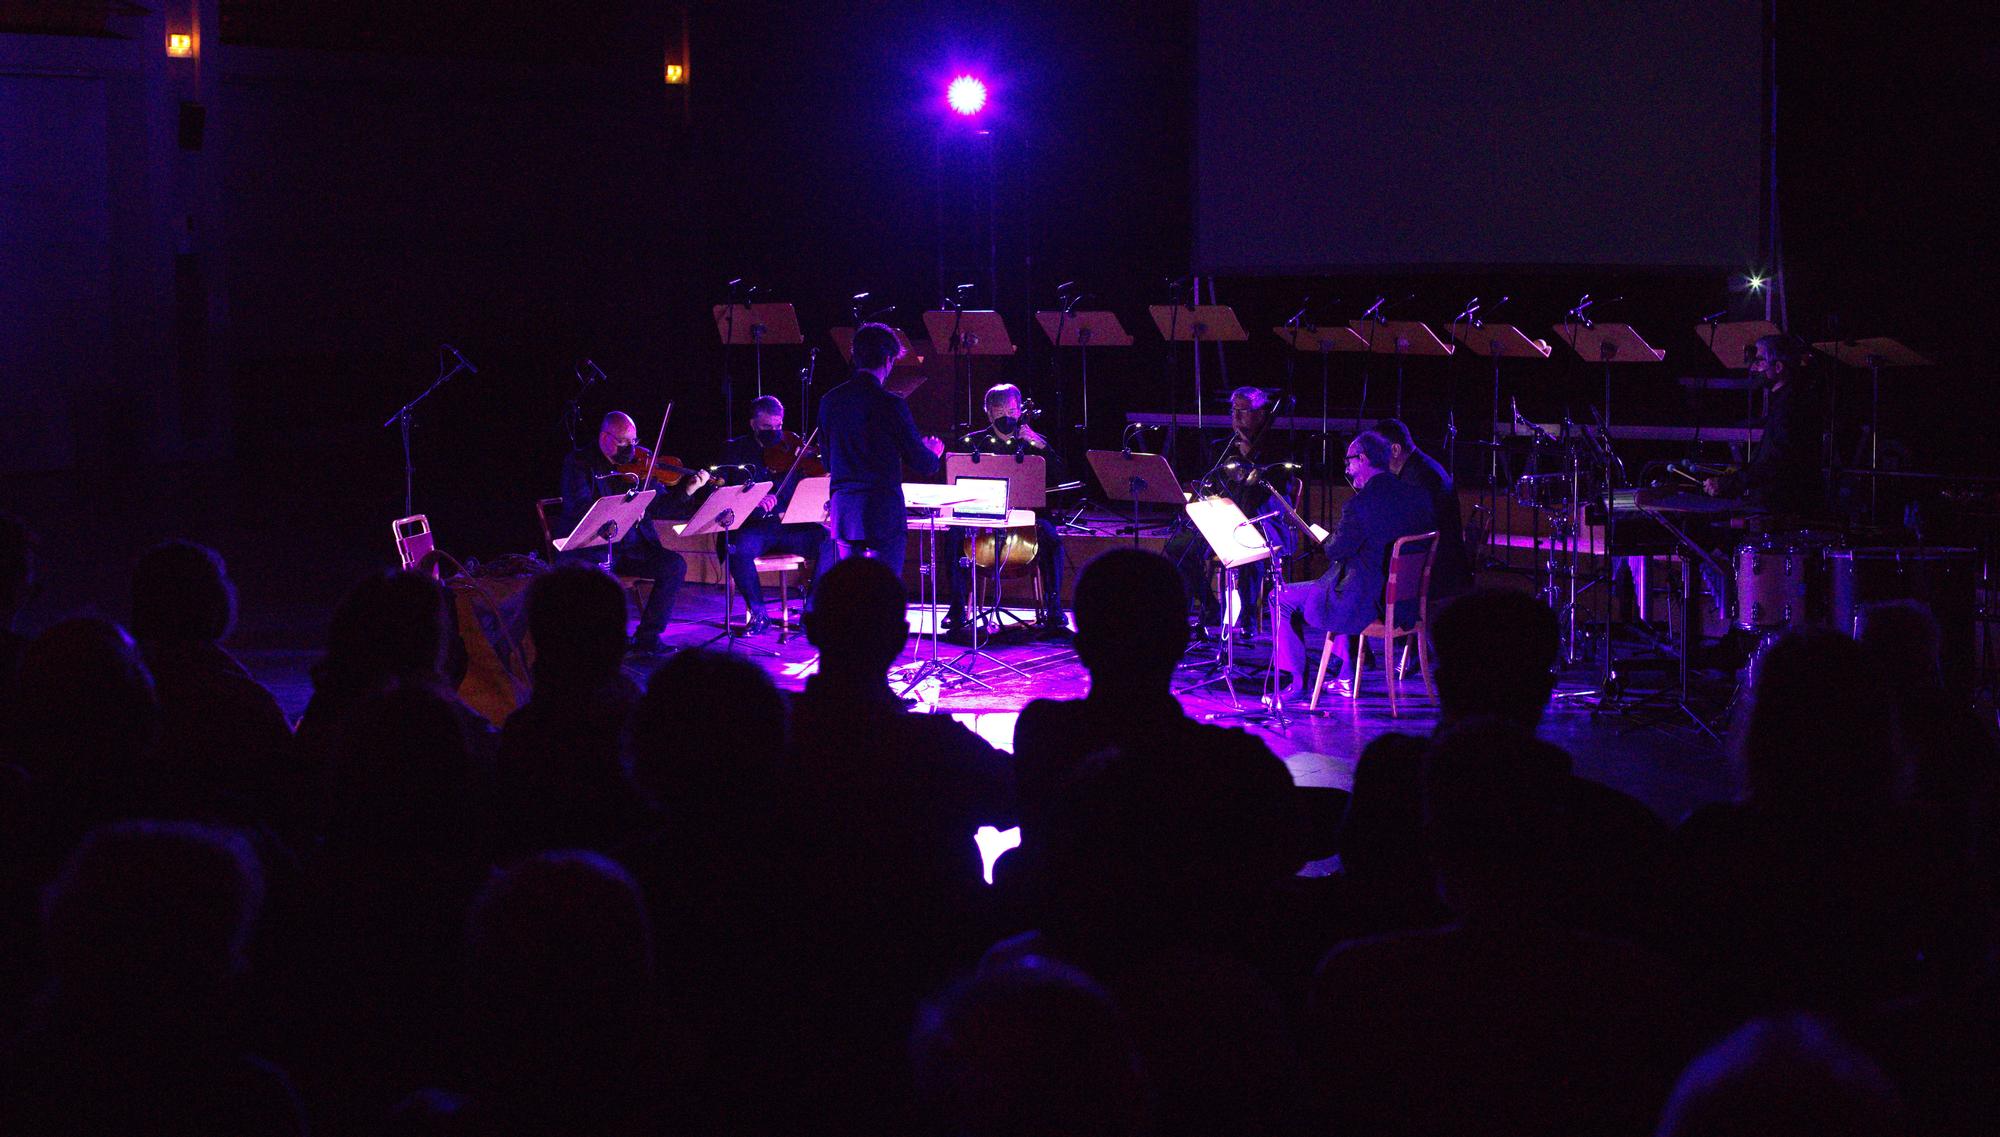 Concierto 'Tragedia' del Grupo Enigma en la sala Multiusos del Auditorio de Zaragoza